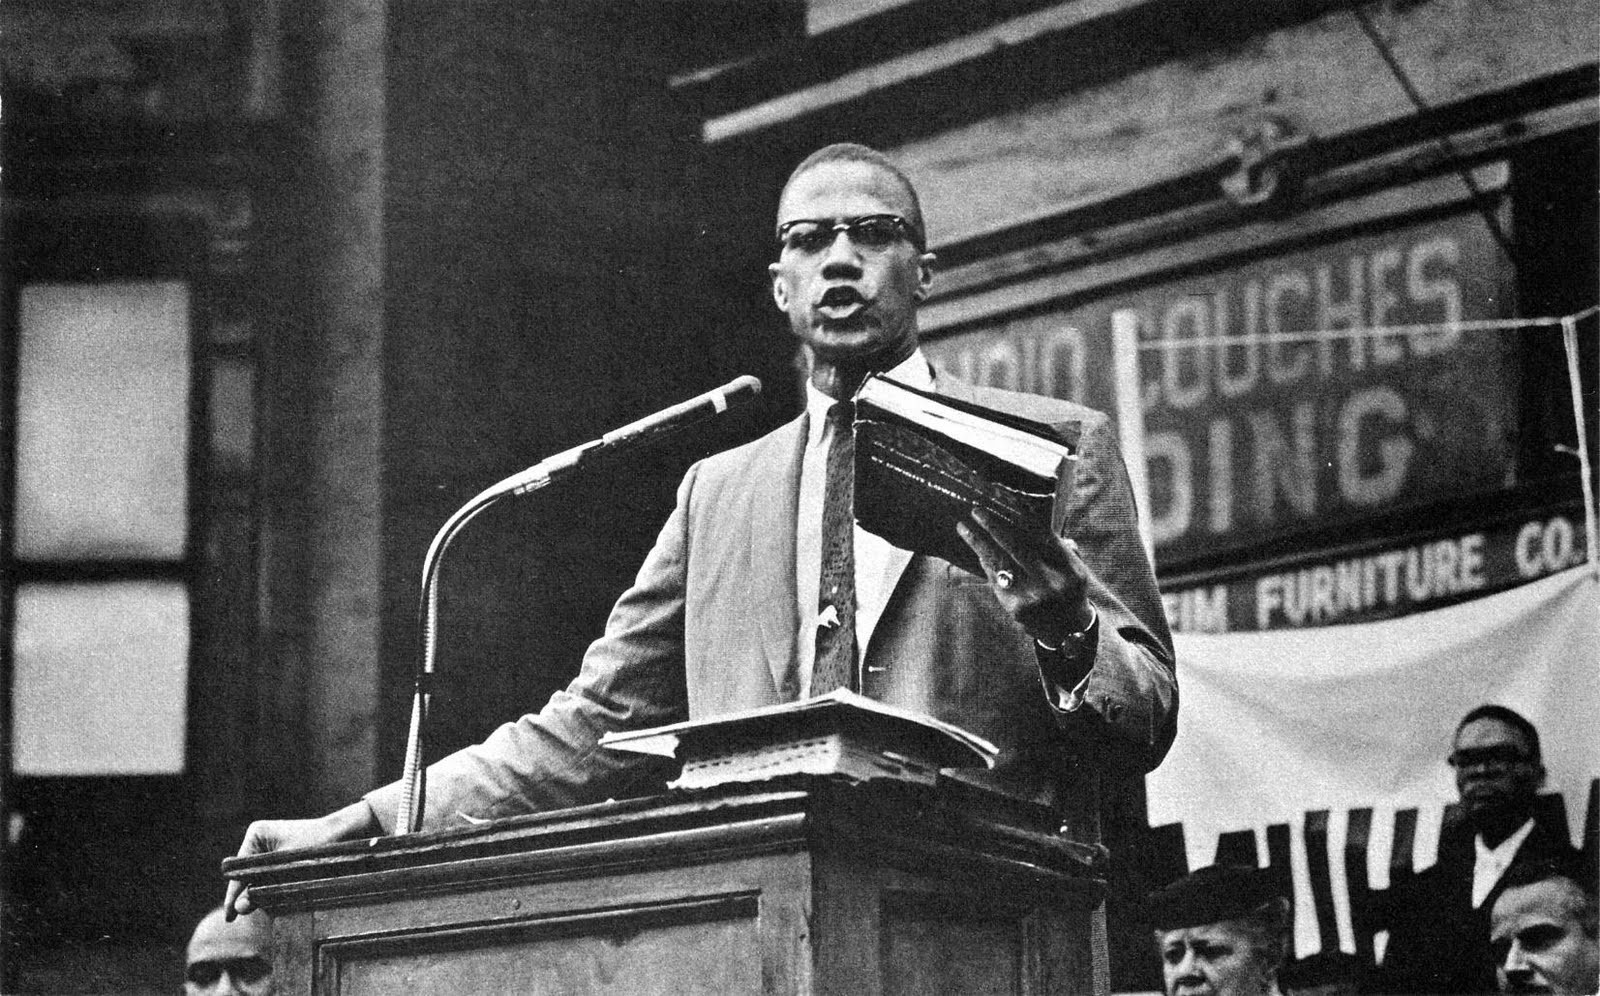 Malcolm X davasında karar: 2 kişi aklandı